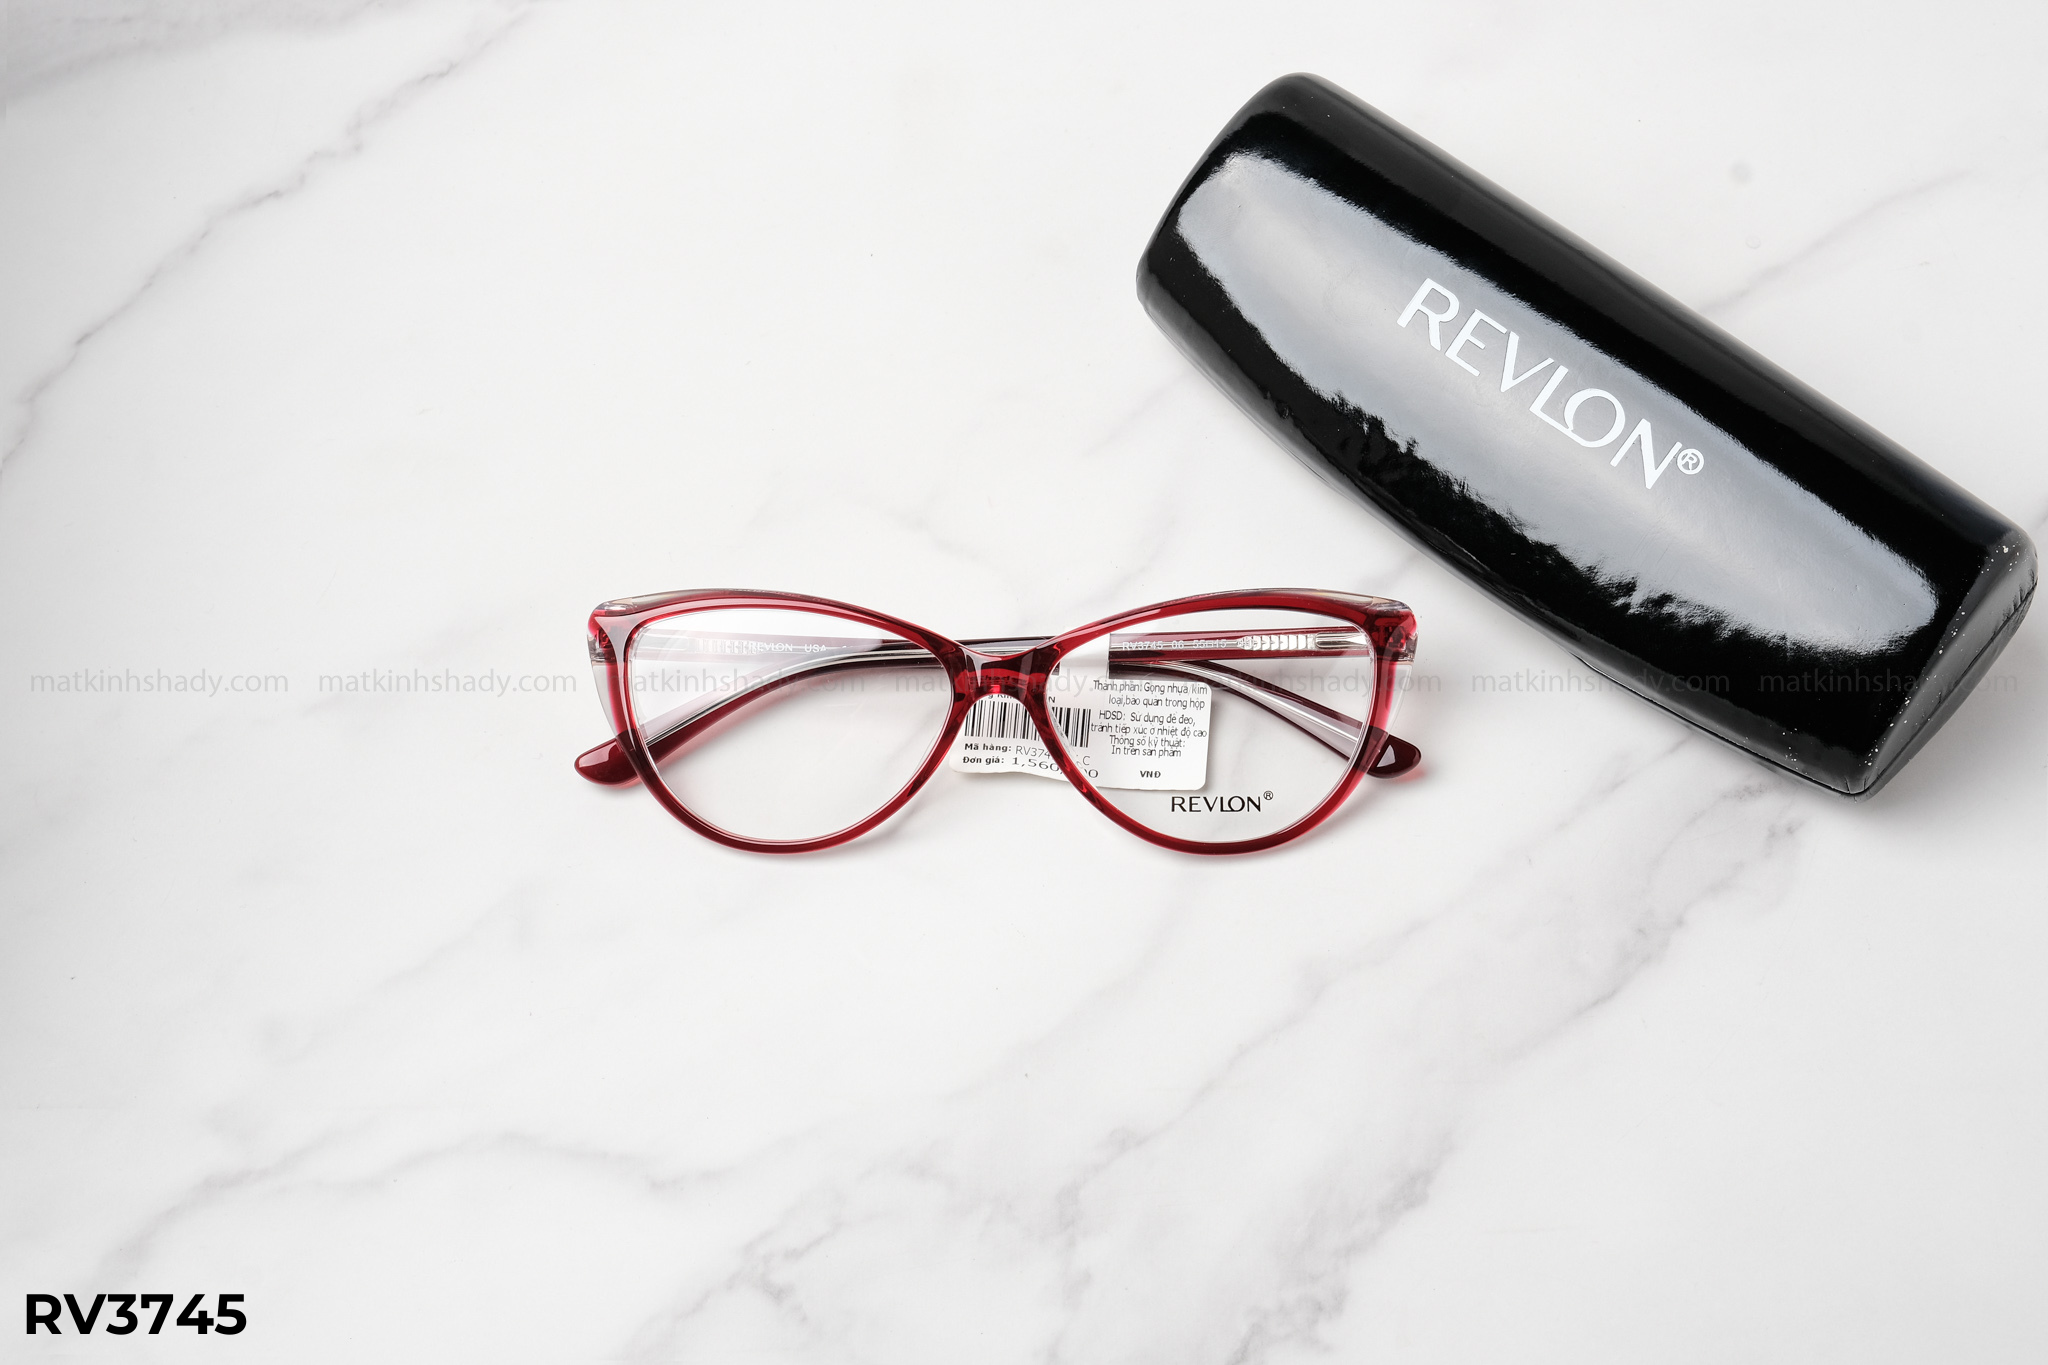  Revlon Eyewear - Glasses - RV3745 